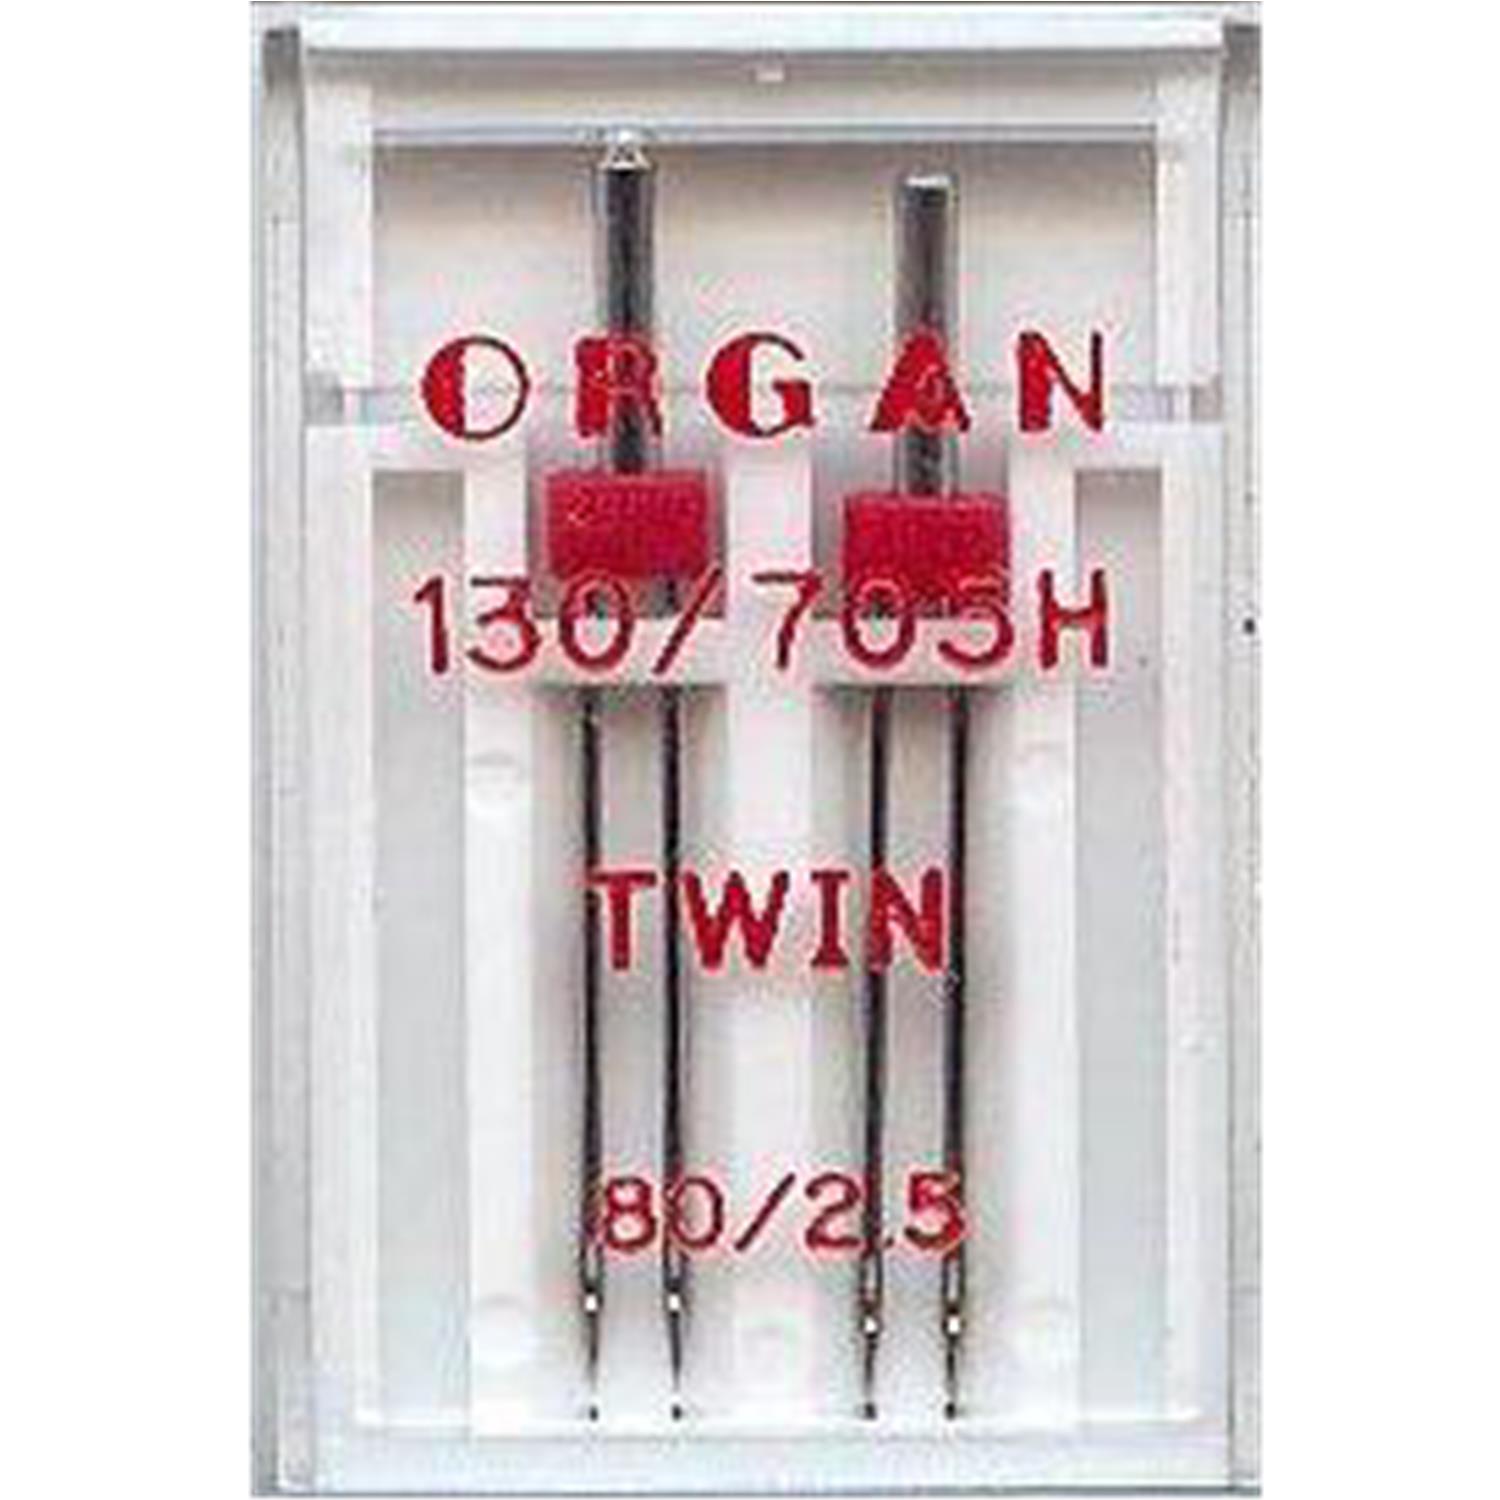 Nähmaschinennadeln Organ, TWIN 80/2.5mm #145